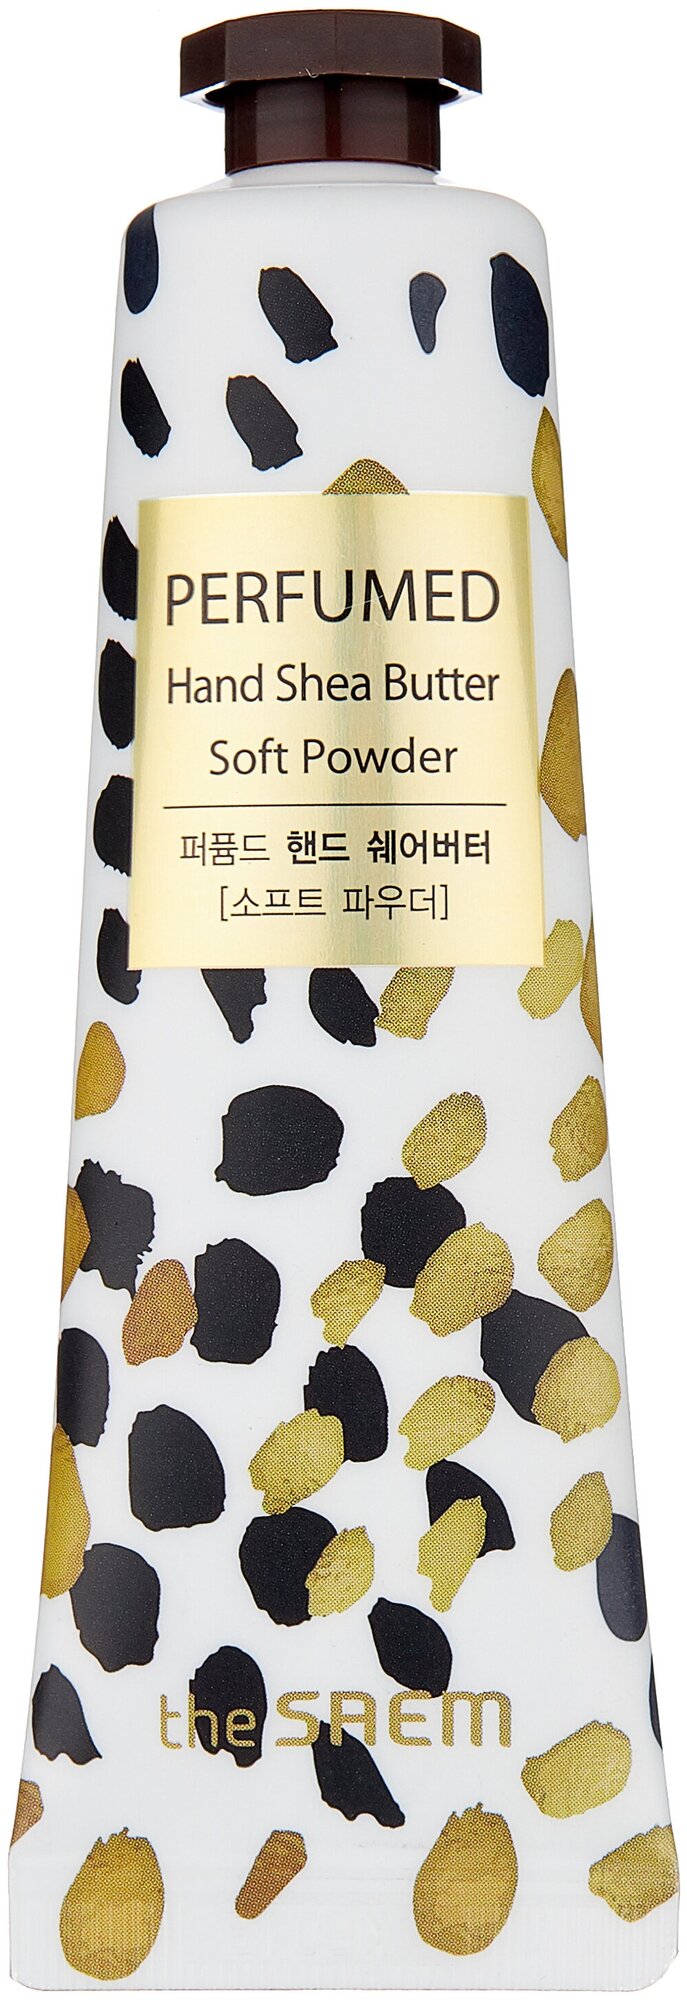 Парфюмированый крем для рук The Saem Perfumed Hand Shea Butter Soft Powder, 30 мл.